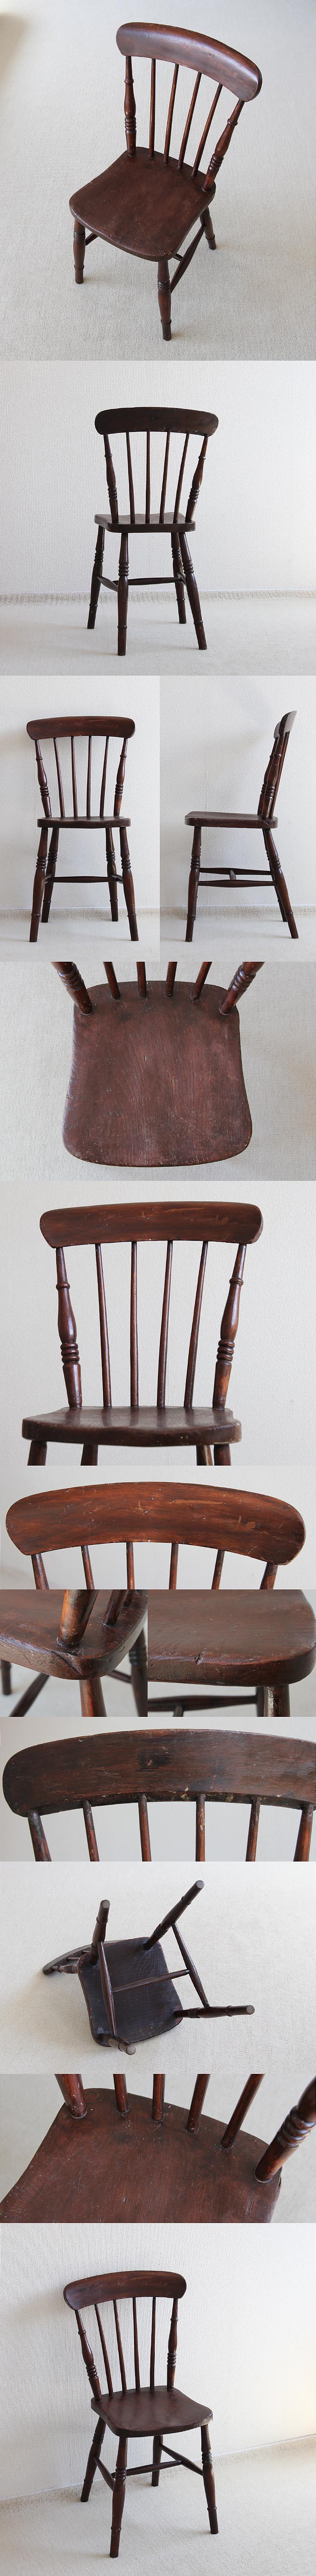 イギリス アンティーク ペイントキッチンチェア 木製椅子 店舗什器 家具「雰囲気パーフェクト」V-565